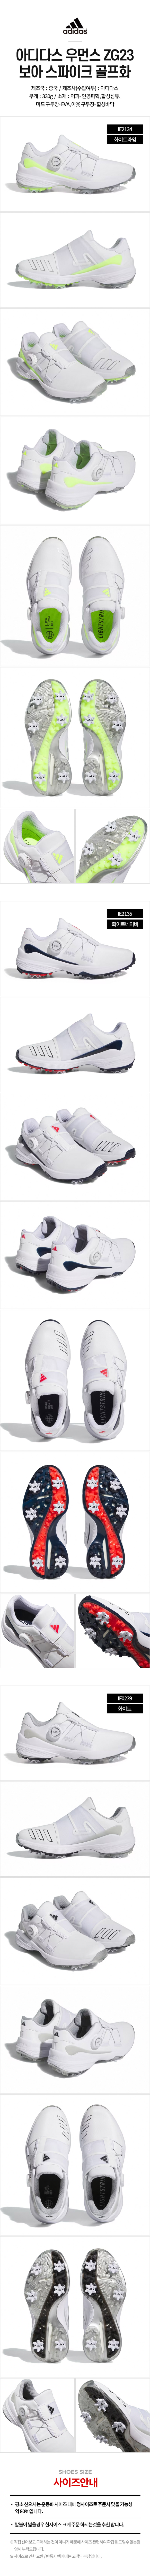 adidas_zg23_boa_w_golf_shoes_23.jpg